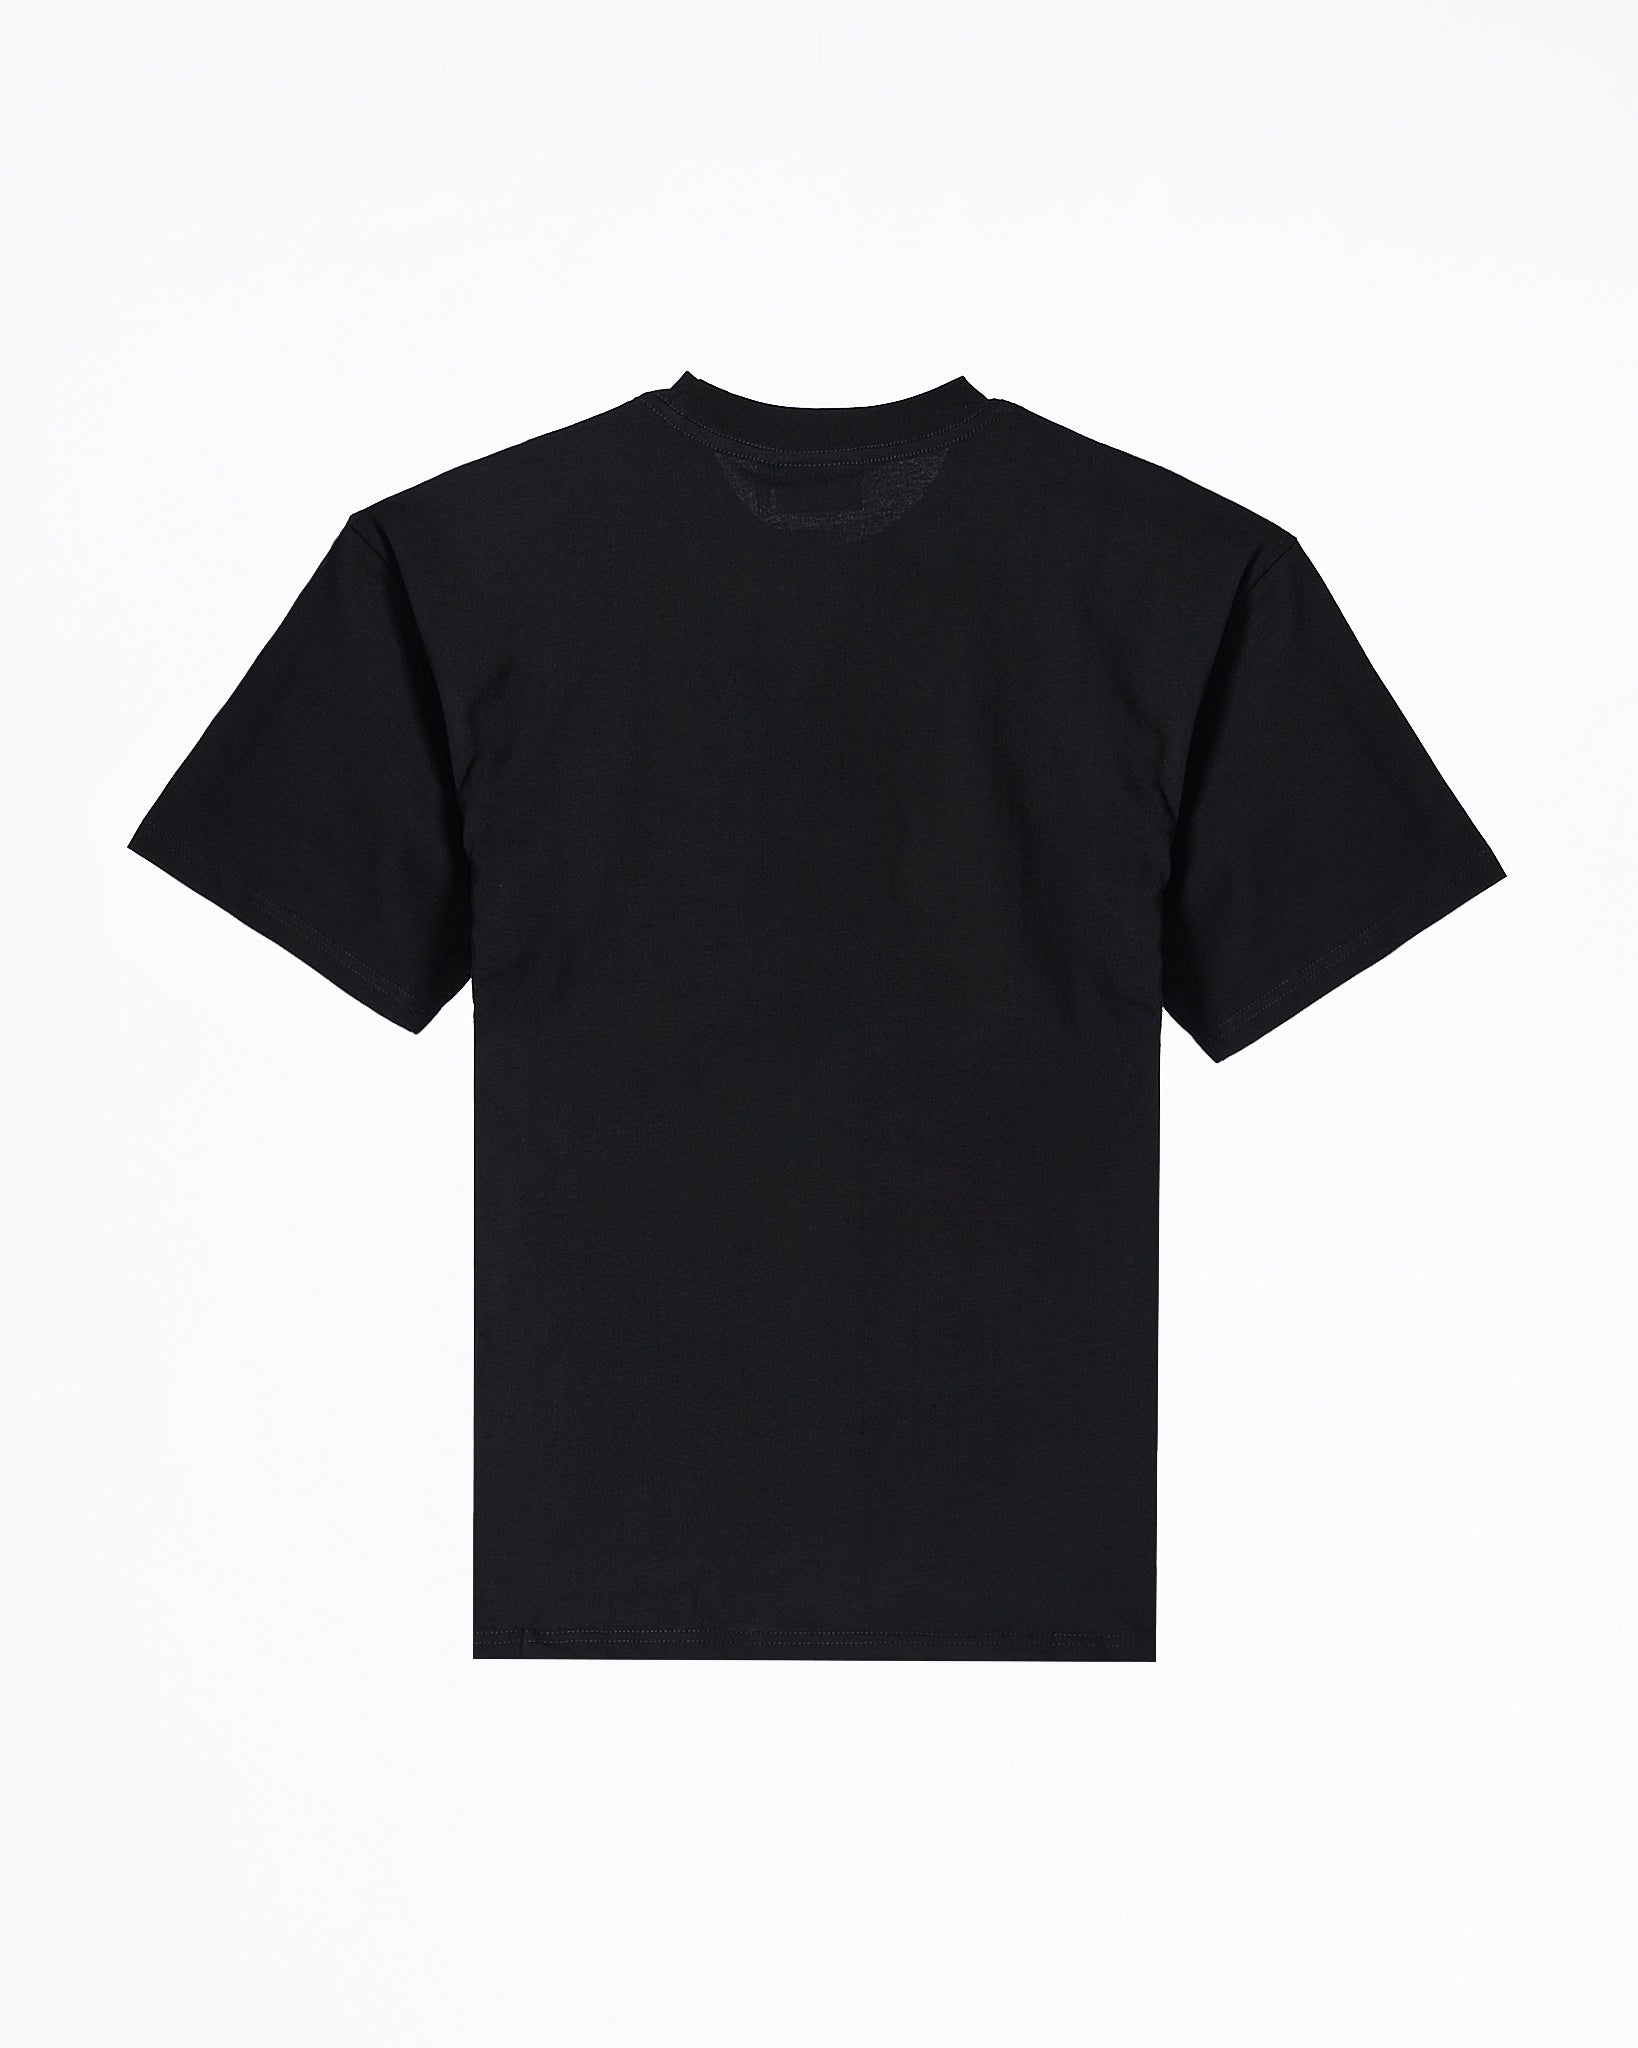 MOI OUTFIT-DRE Smiling Face Unisex Black T-Shirt 18.90